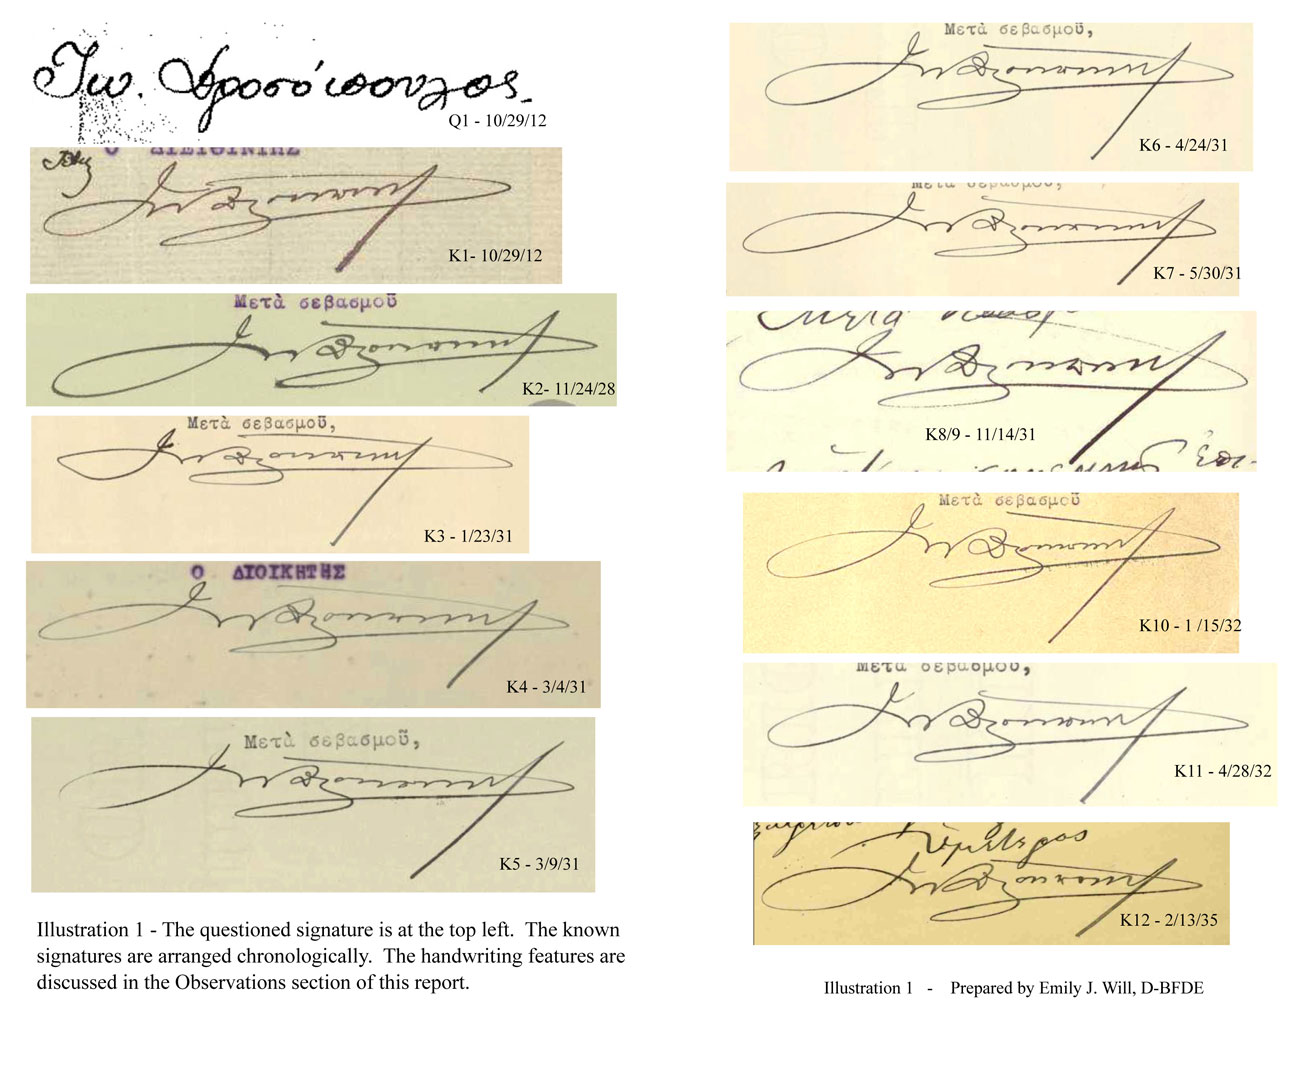 Με το γυμνό μάτι είναι ηλίου φαεινότερον πως η υπογραφή επάνω αριστερά δεν έχει την παραμικρή σχέση με τις υπόλοιπες υπογραφές, που προέρχονται από τις προσωπικές επιστολές του Ι. Δροσόπουλου προς τον Ελευθέριο Βενιζέλο και τηρούνται στο Εθνικό Ίδρυμα Ερευνών και Μελετών «Ελευθέριος Κ. Βενιζέλος».